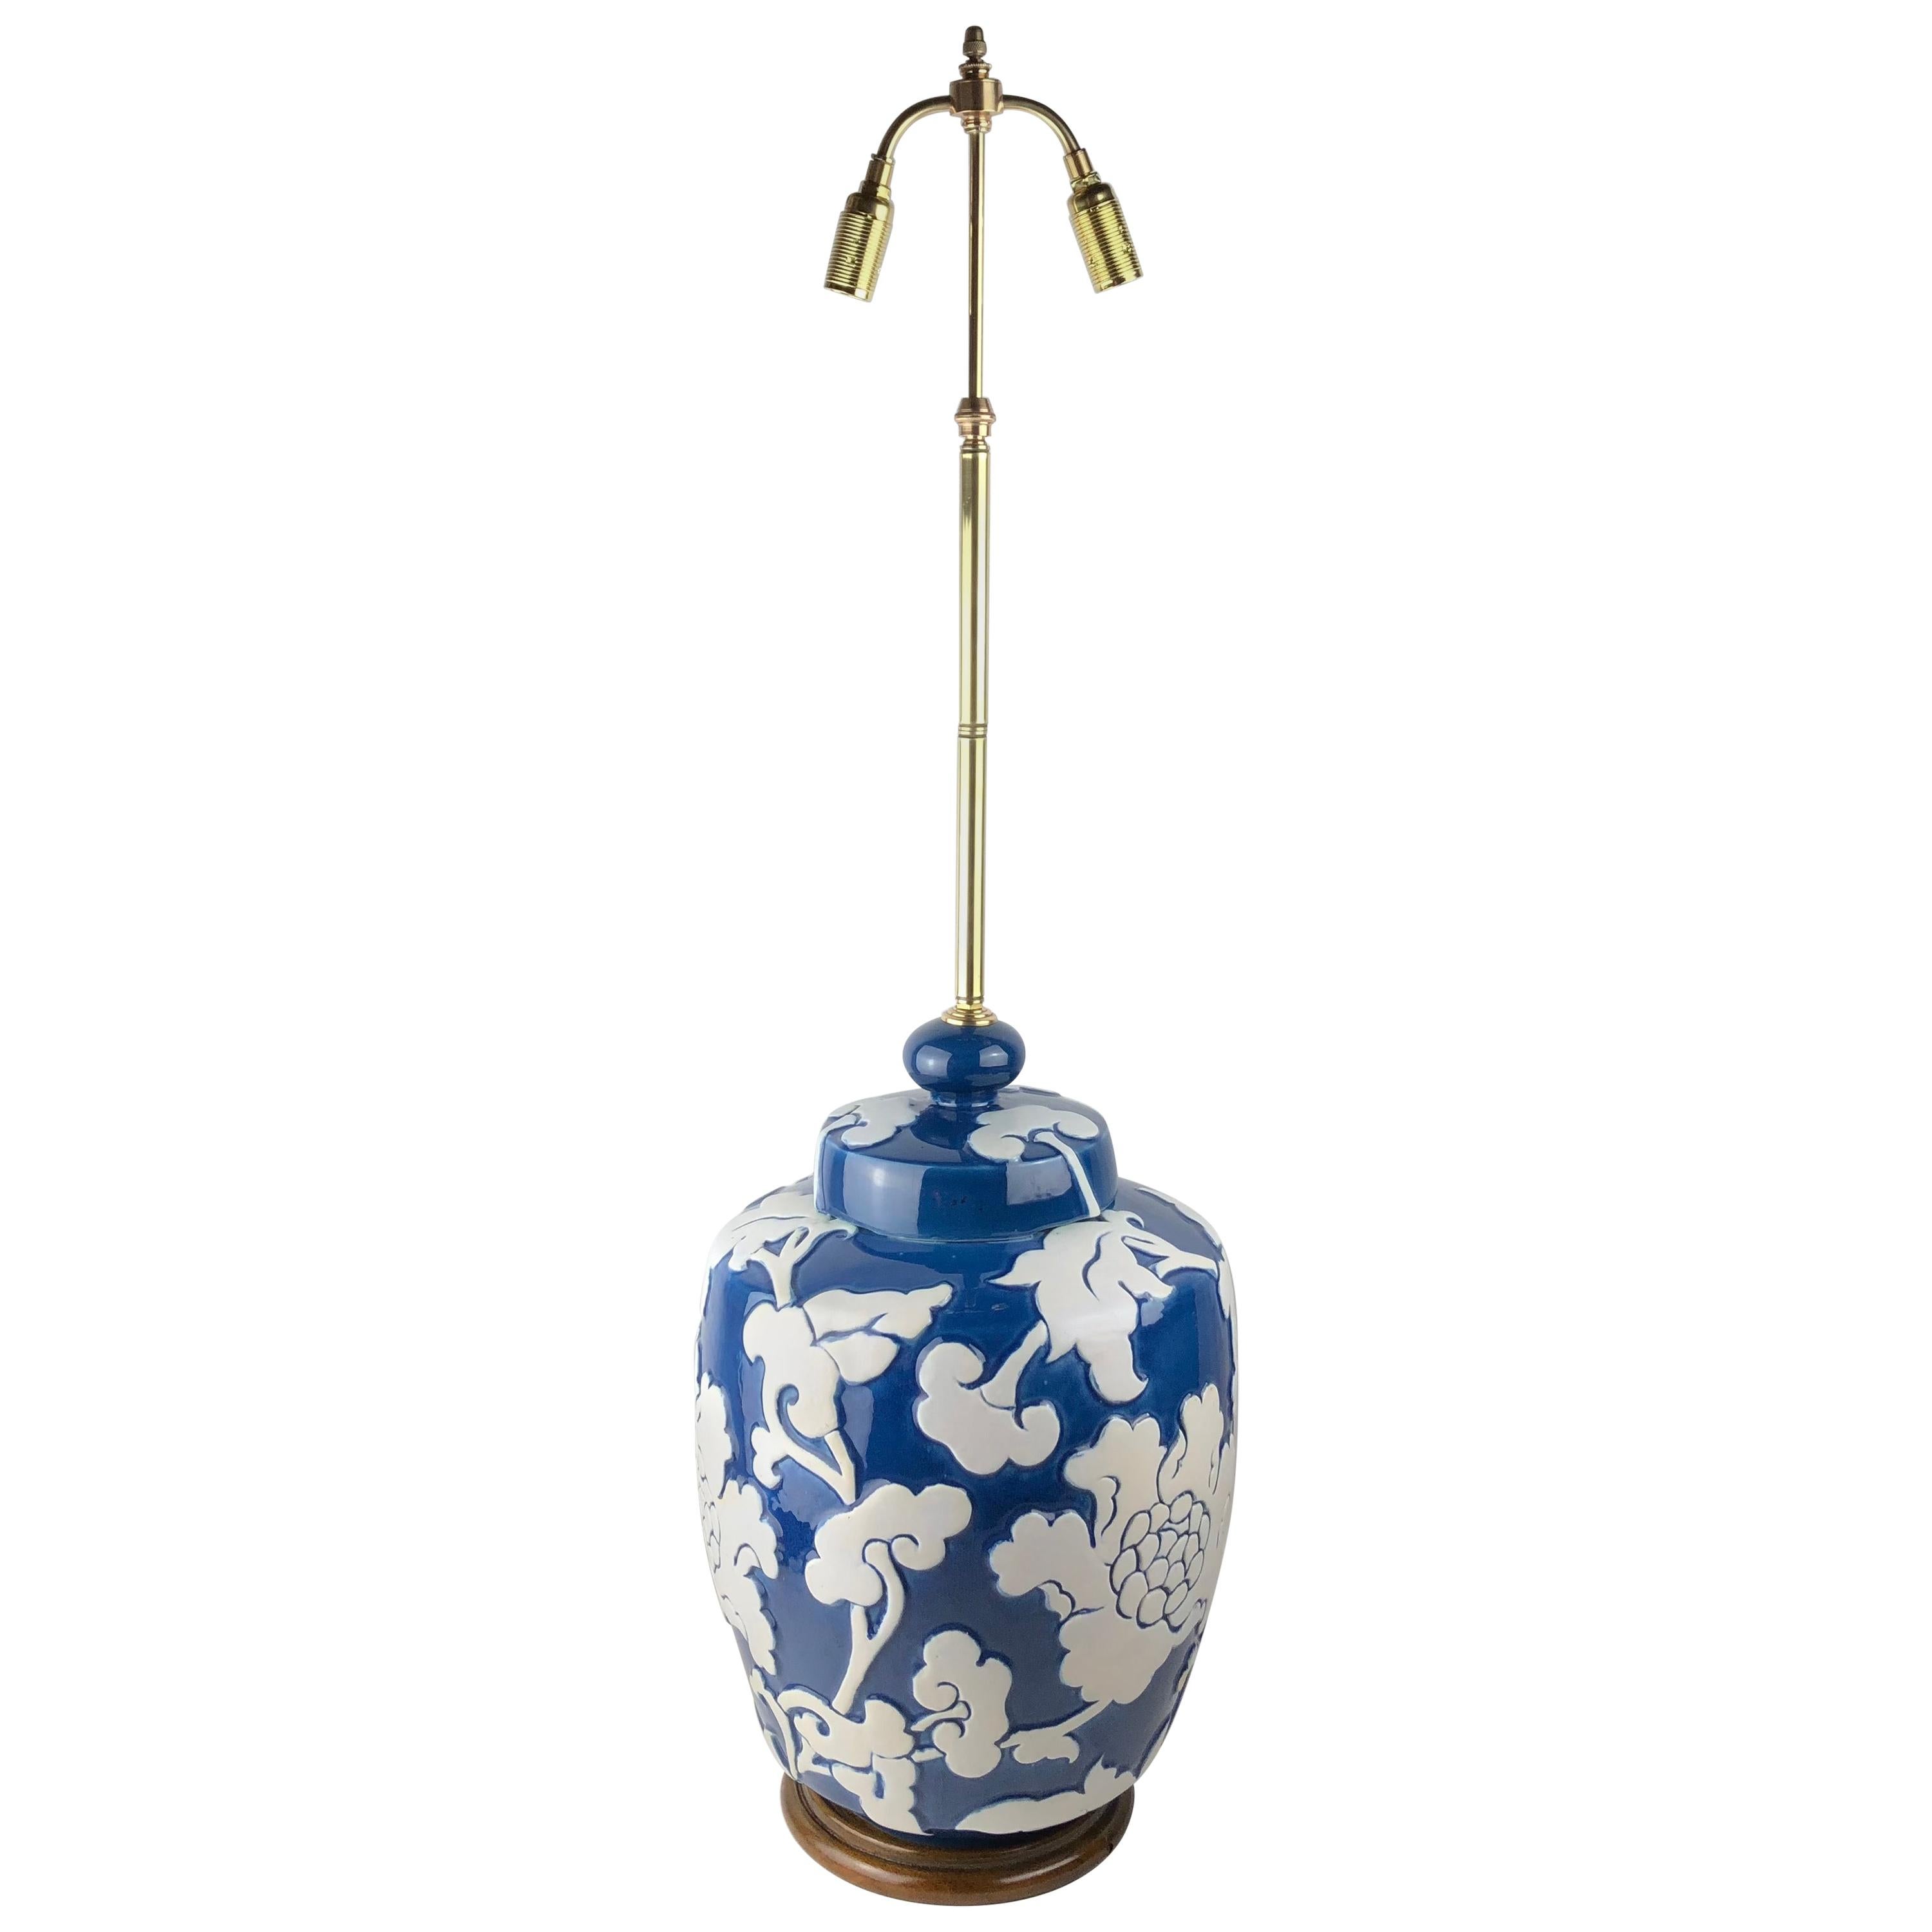 Große blau glasierte französische Porzellan-Tischlampe mit hochreliefierten Motiven